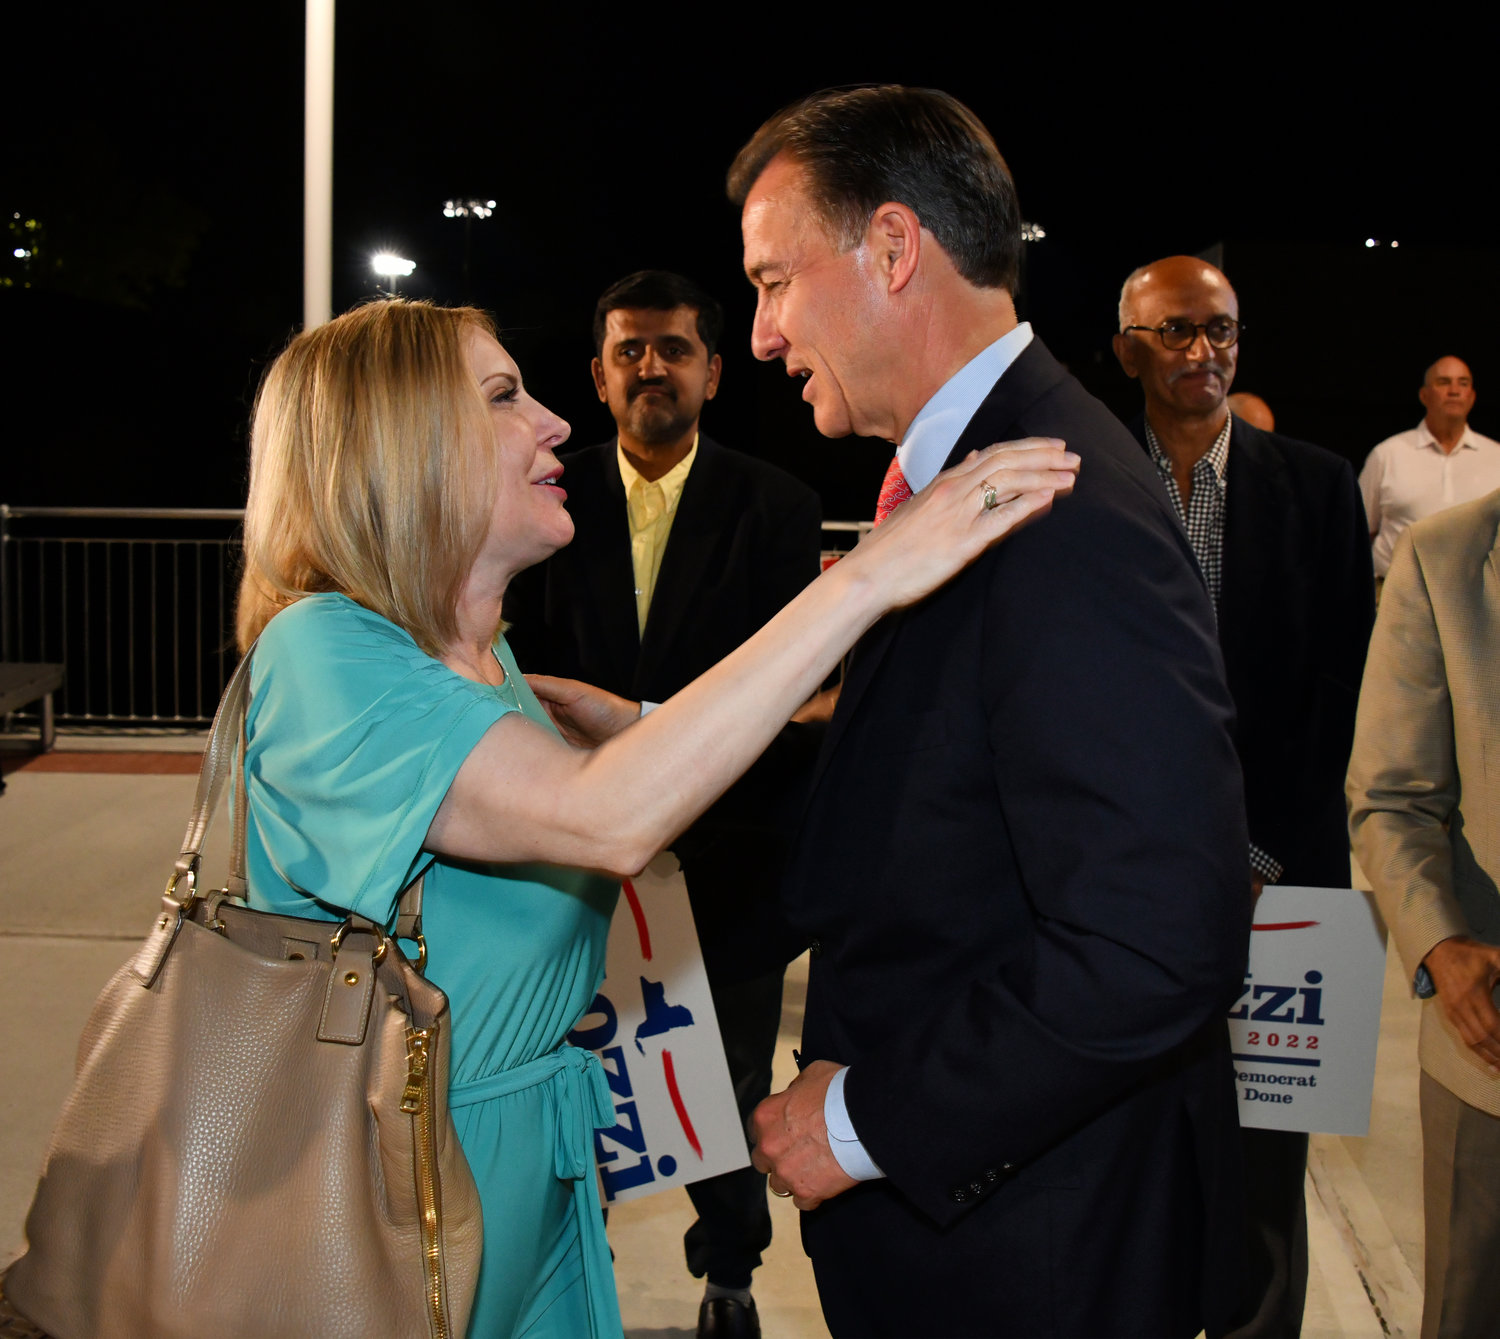 Former Glen Cove City Councilwoman Dr. Eve Lupenko Ferrante consoled Suozzi, who lost the Democratic primary.